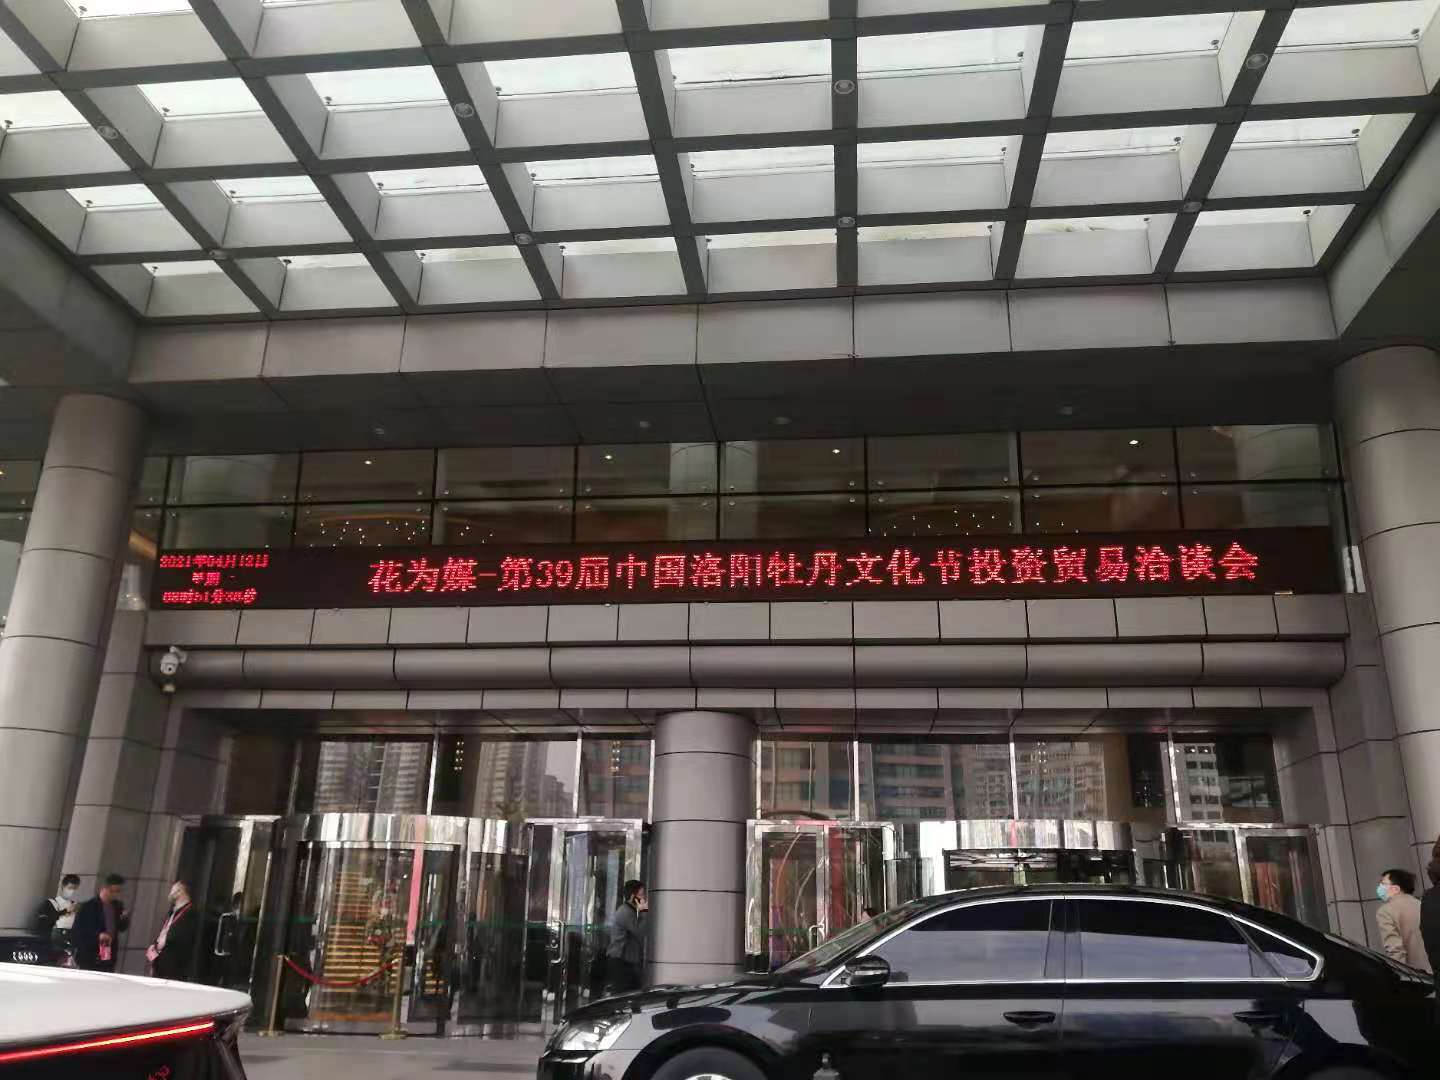 洛陽安德路科技有限公司參加第39屆中國洛陽牡丹文化節投資貿易洽談會